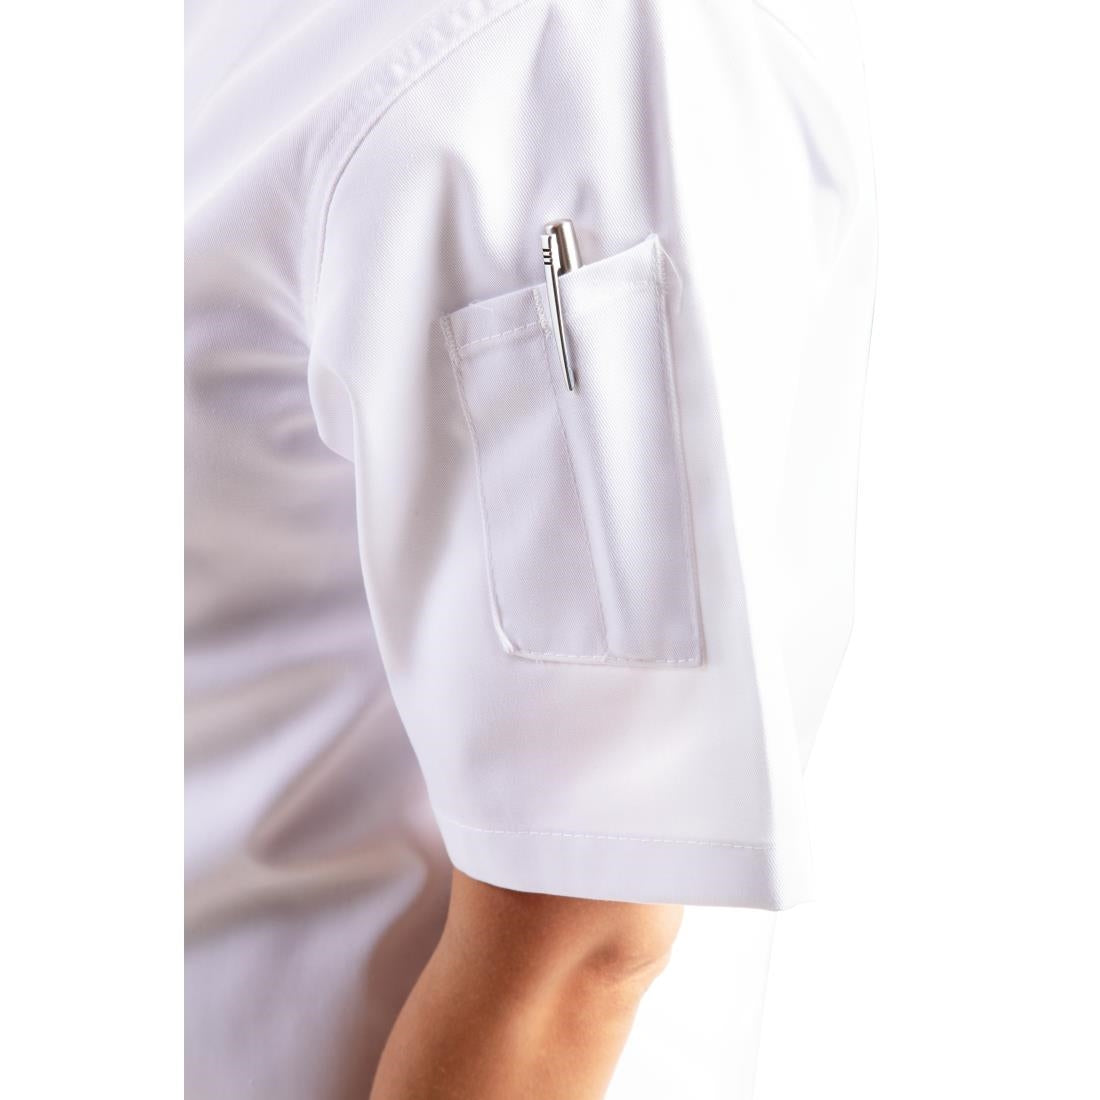 Whites Chicago Unisex Chefs Jacket Short Sleeve White